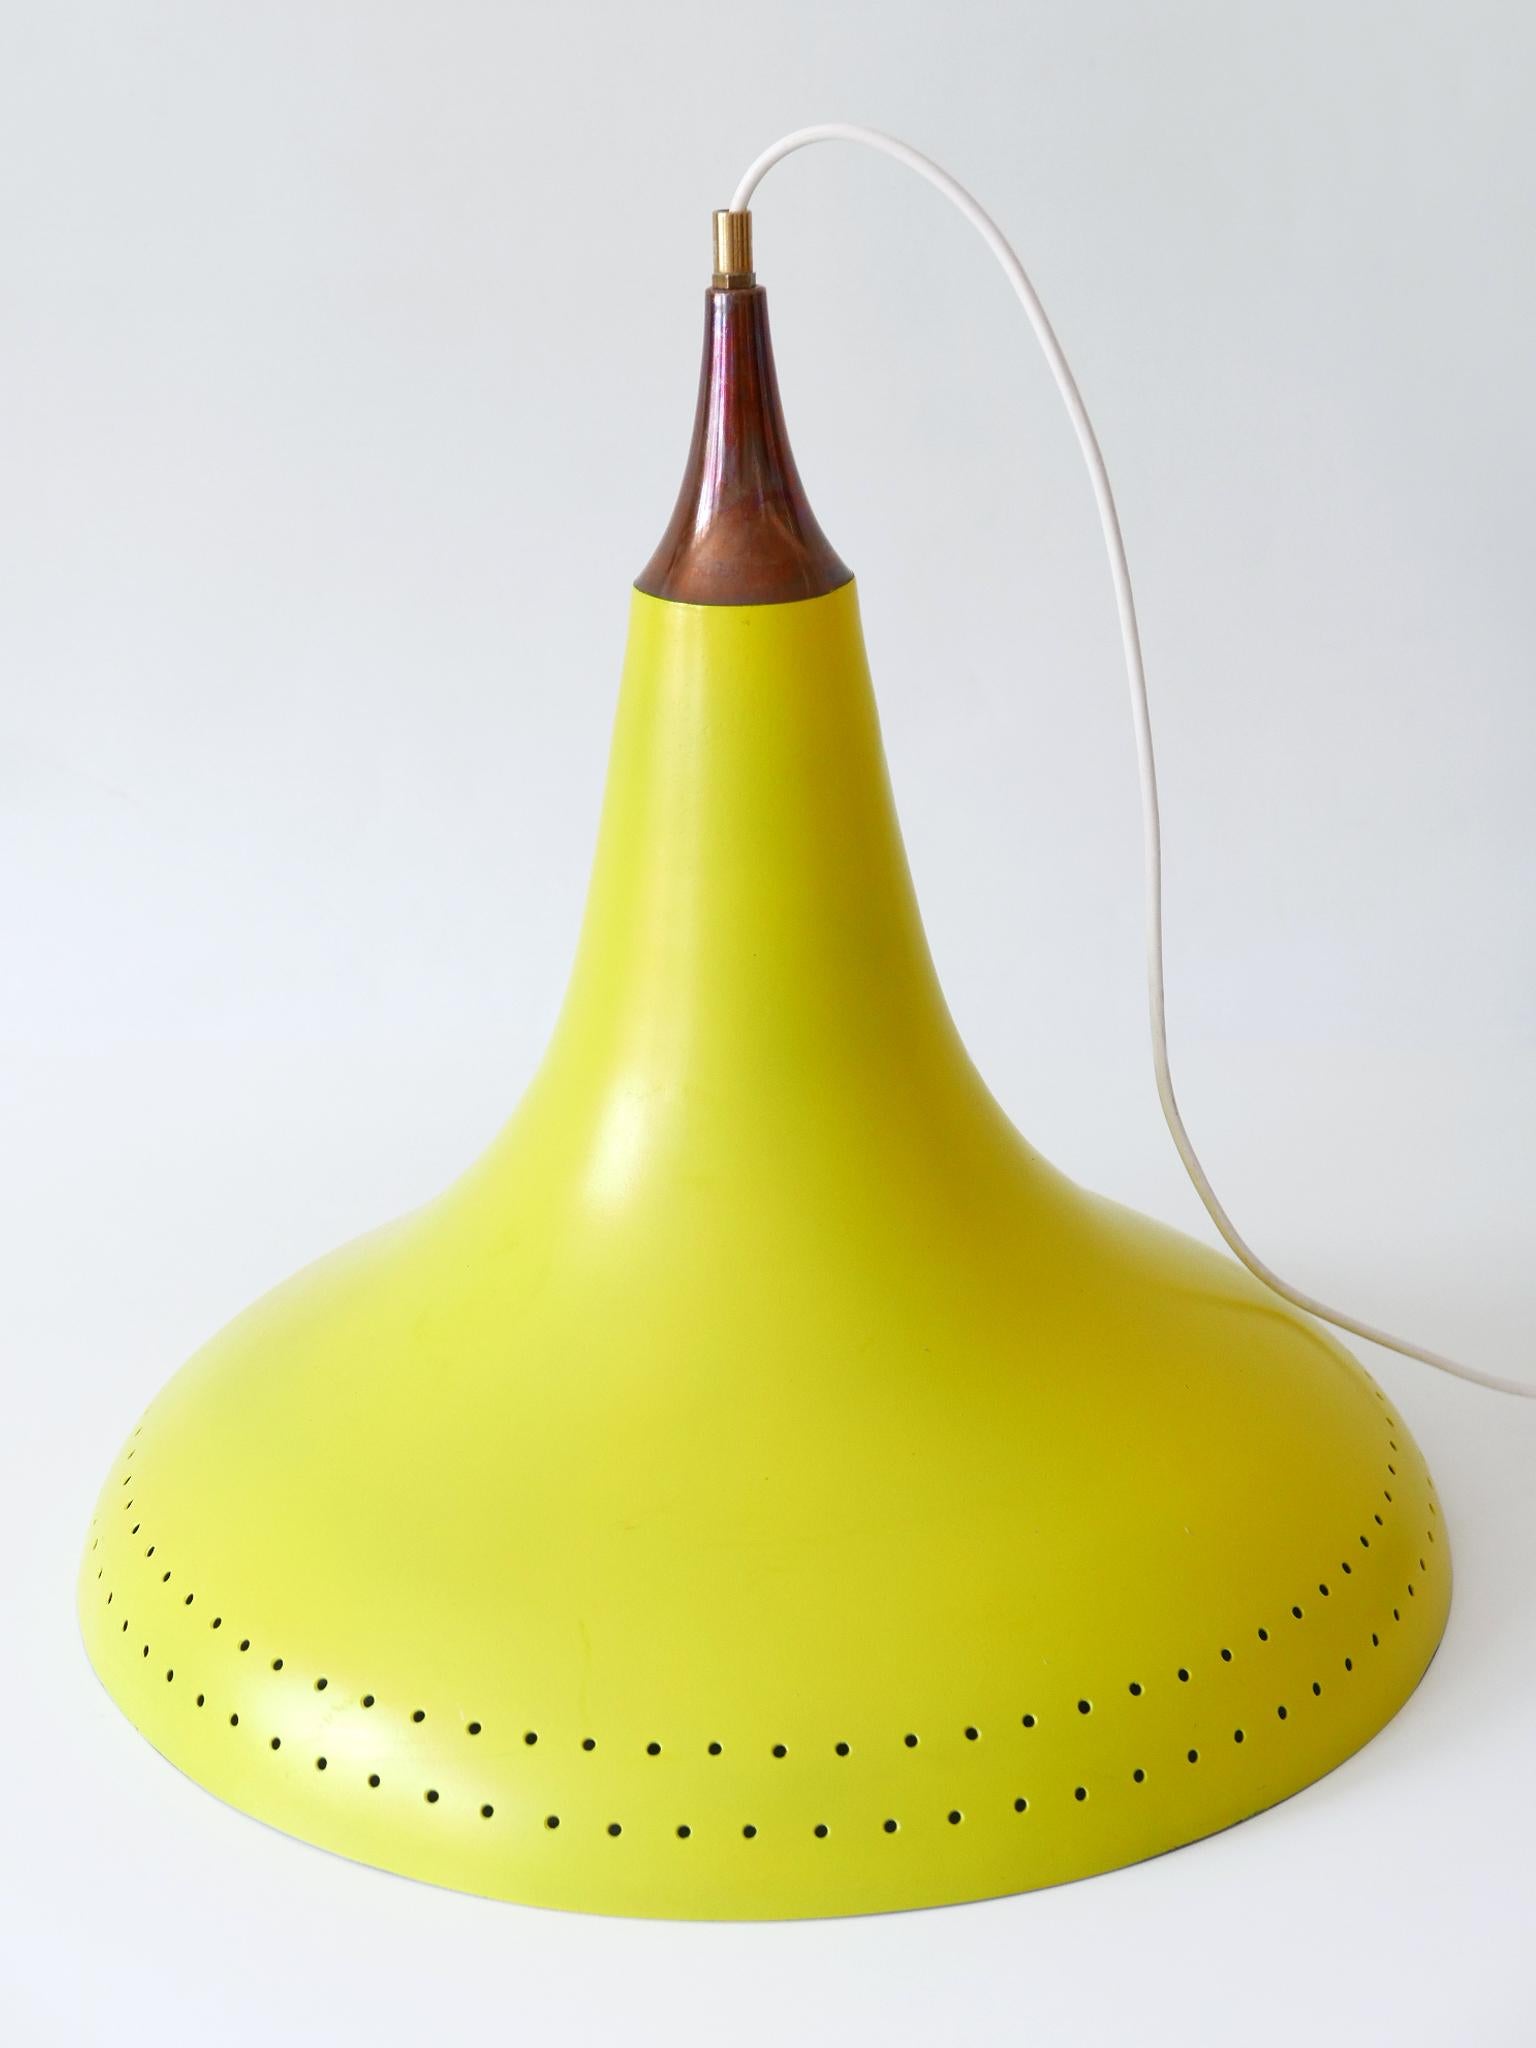 Exceptional Mid-Century Modern Perforated Aluminium Pendant Lamp Austria 1960s For Sale 10